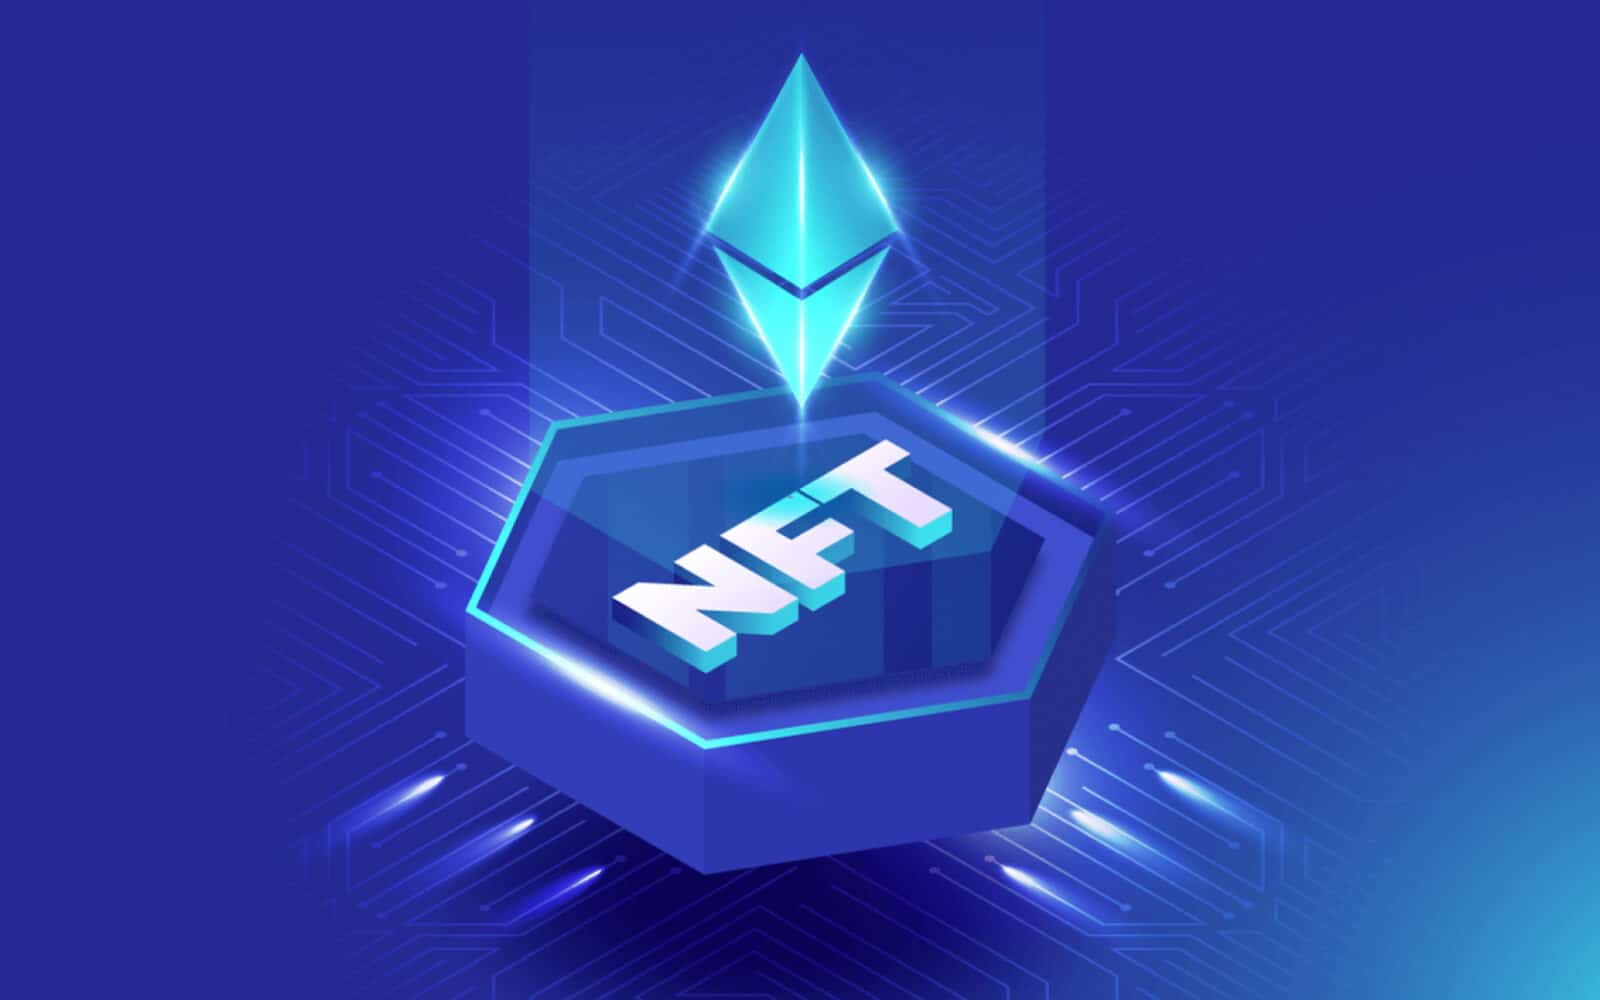 The Merge NFT